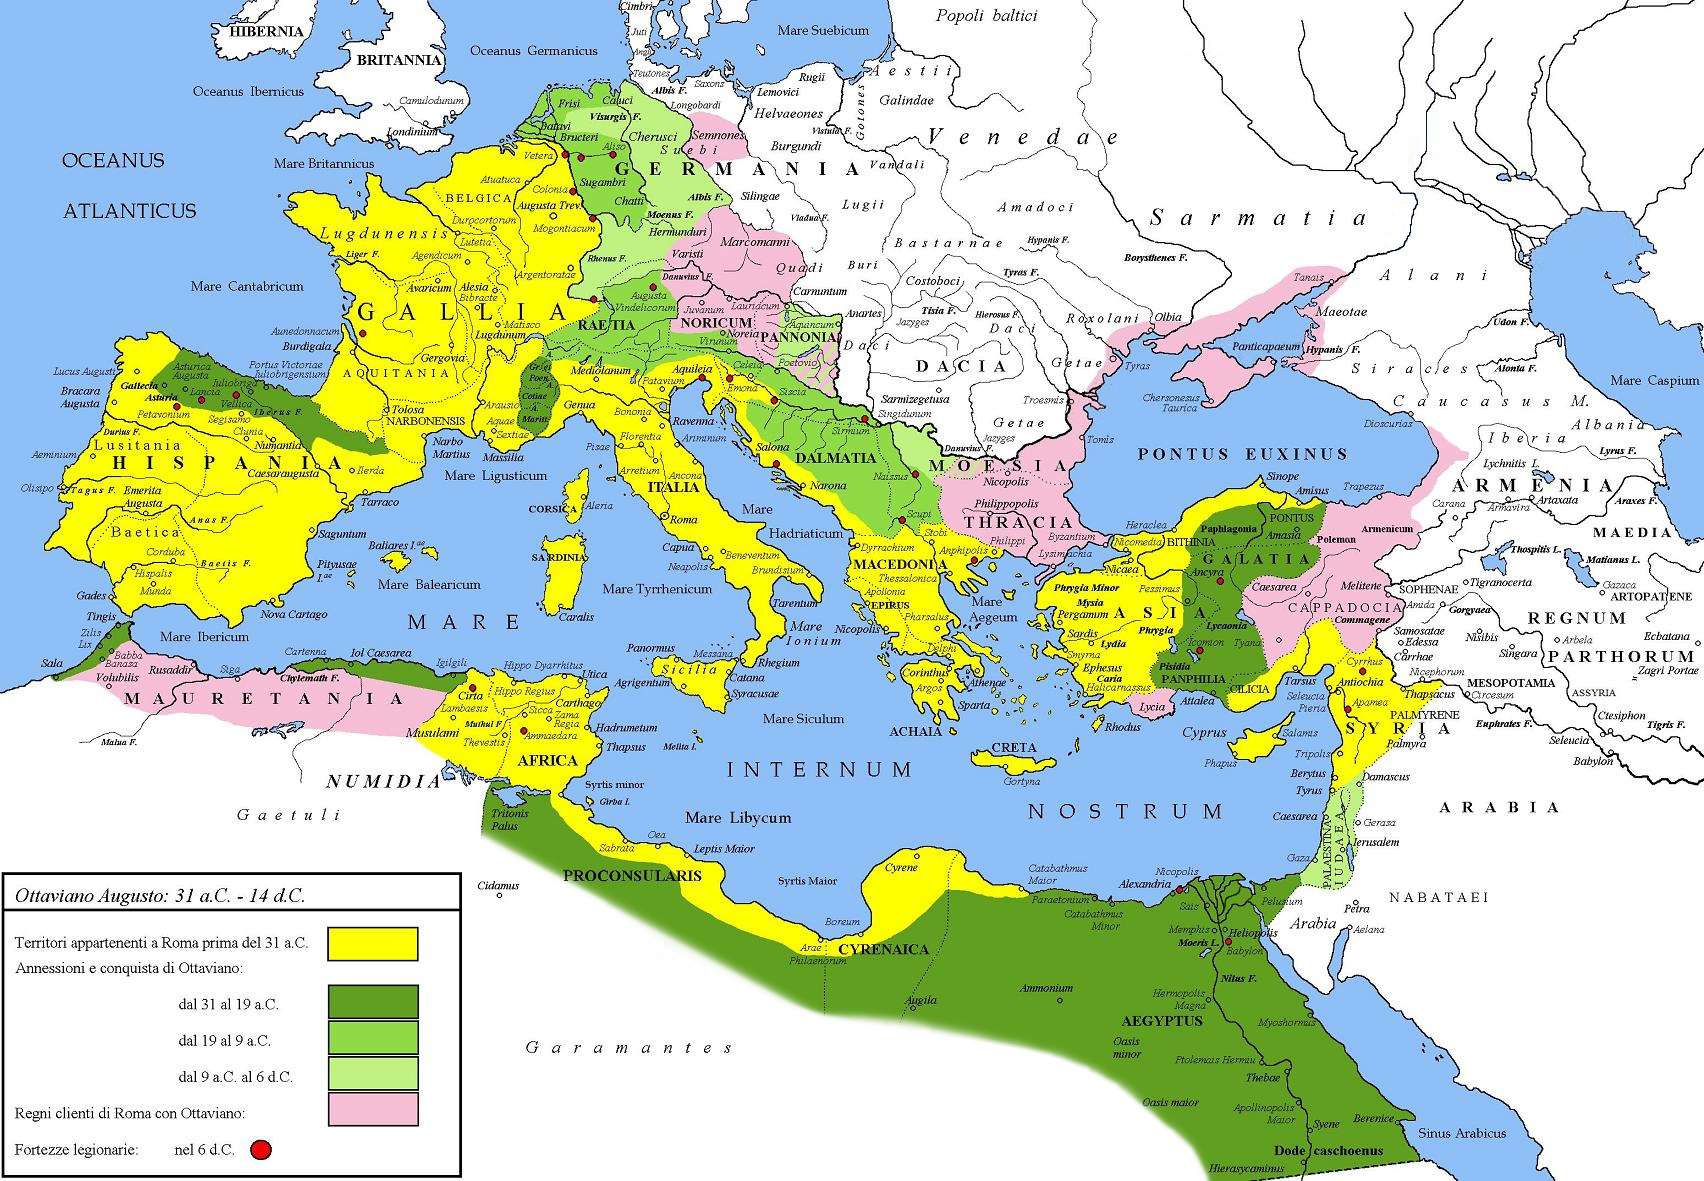 Έκταση της Ρωμαϊκής Αυτοκρατορίας υπό τον Αύγουστο. Με κίτρινο χρώμα σημειώνεται η έκταση του κράτους το 31 π.Χ., με πράσινο χρώμα οι περιοχές που κατακτήθηκαν όσο ήταν στην εξουσία ο Αύγουστος και με ροζ τα υποτελή κράτη.